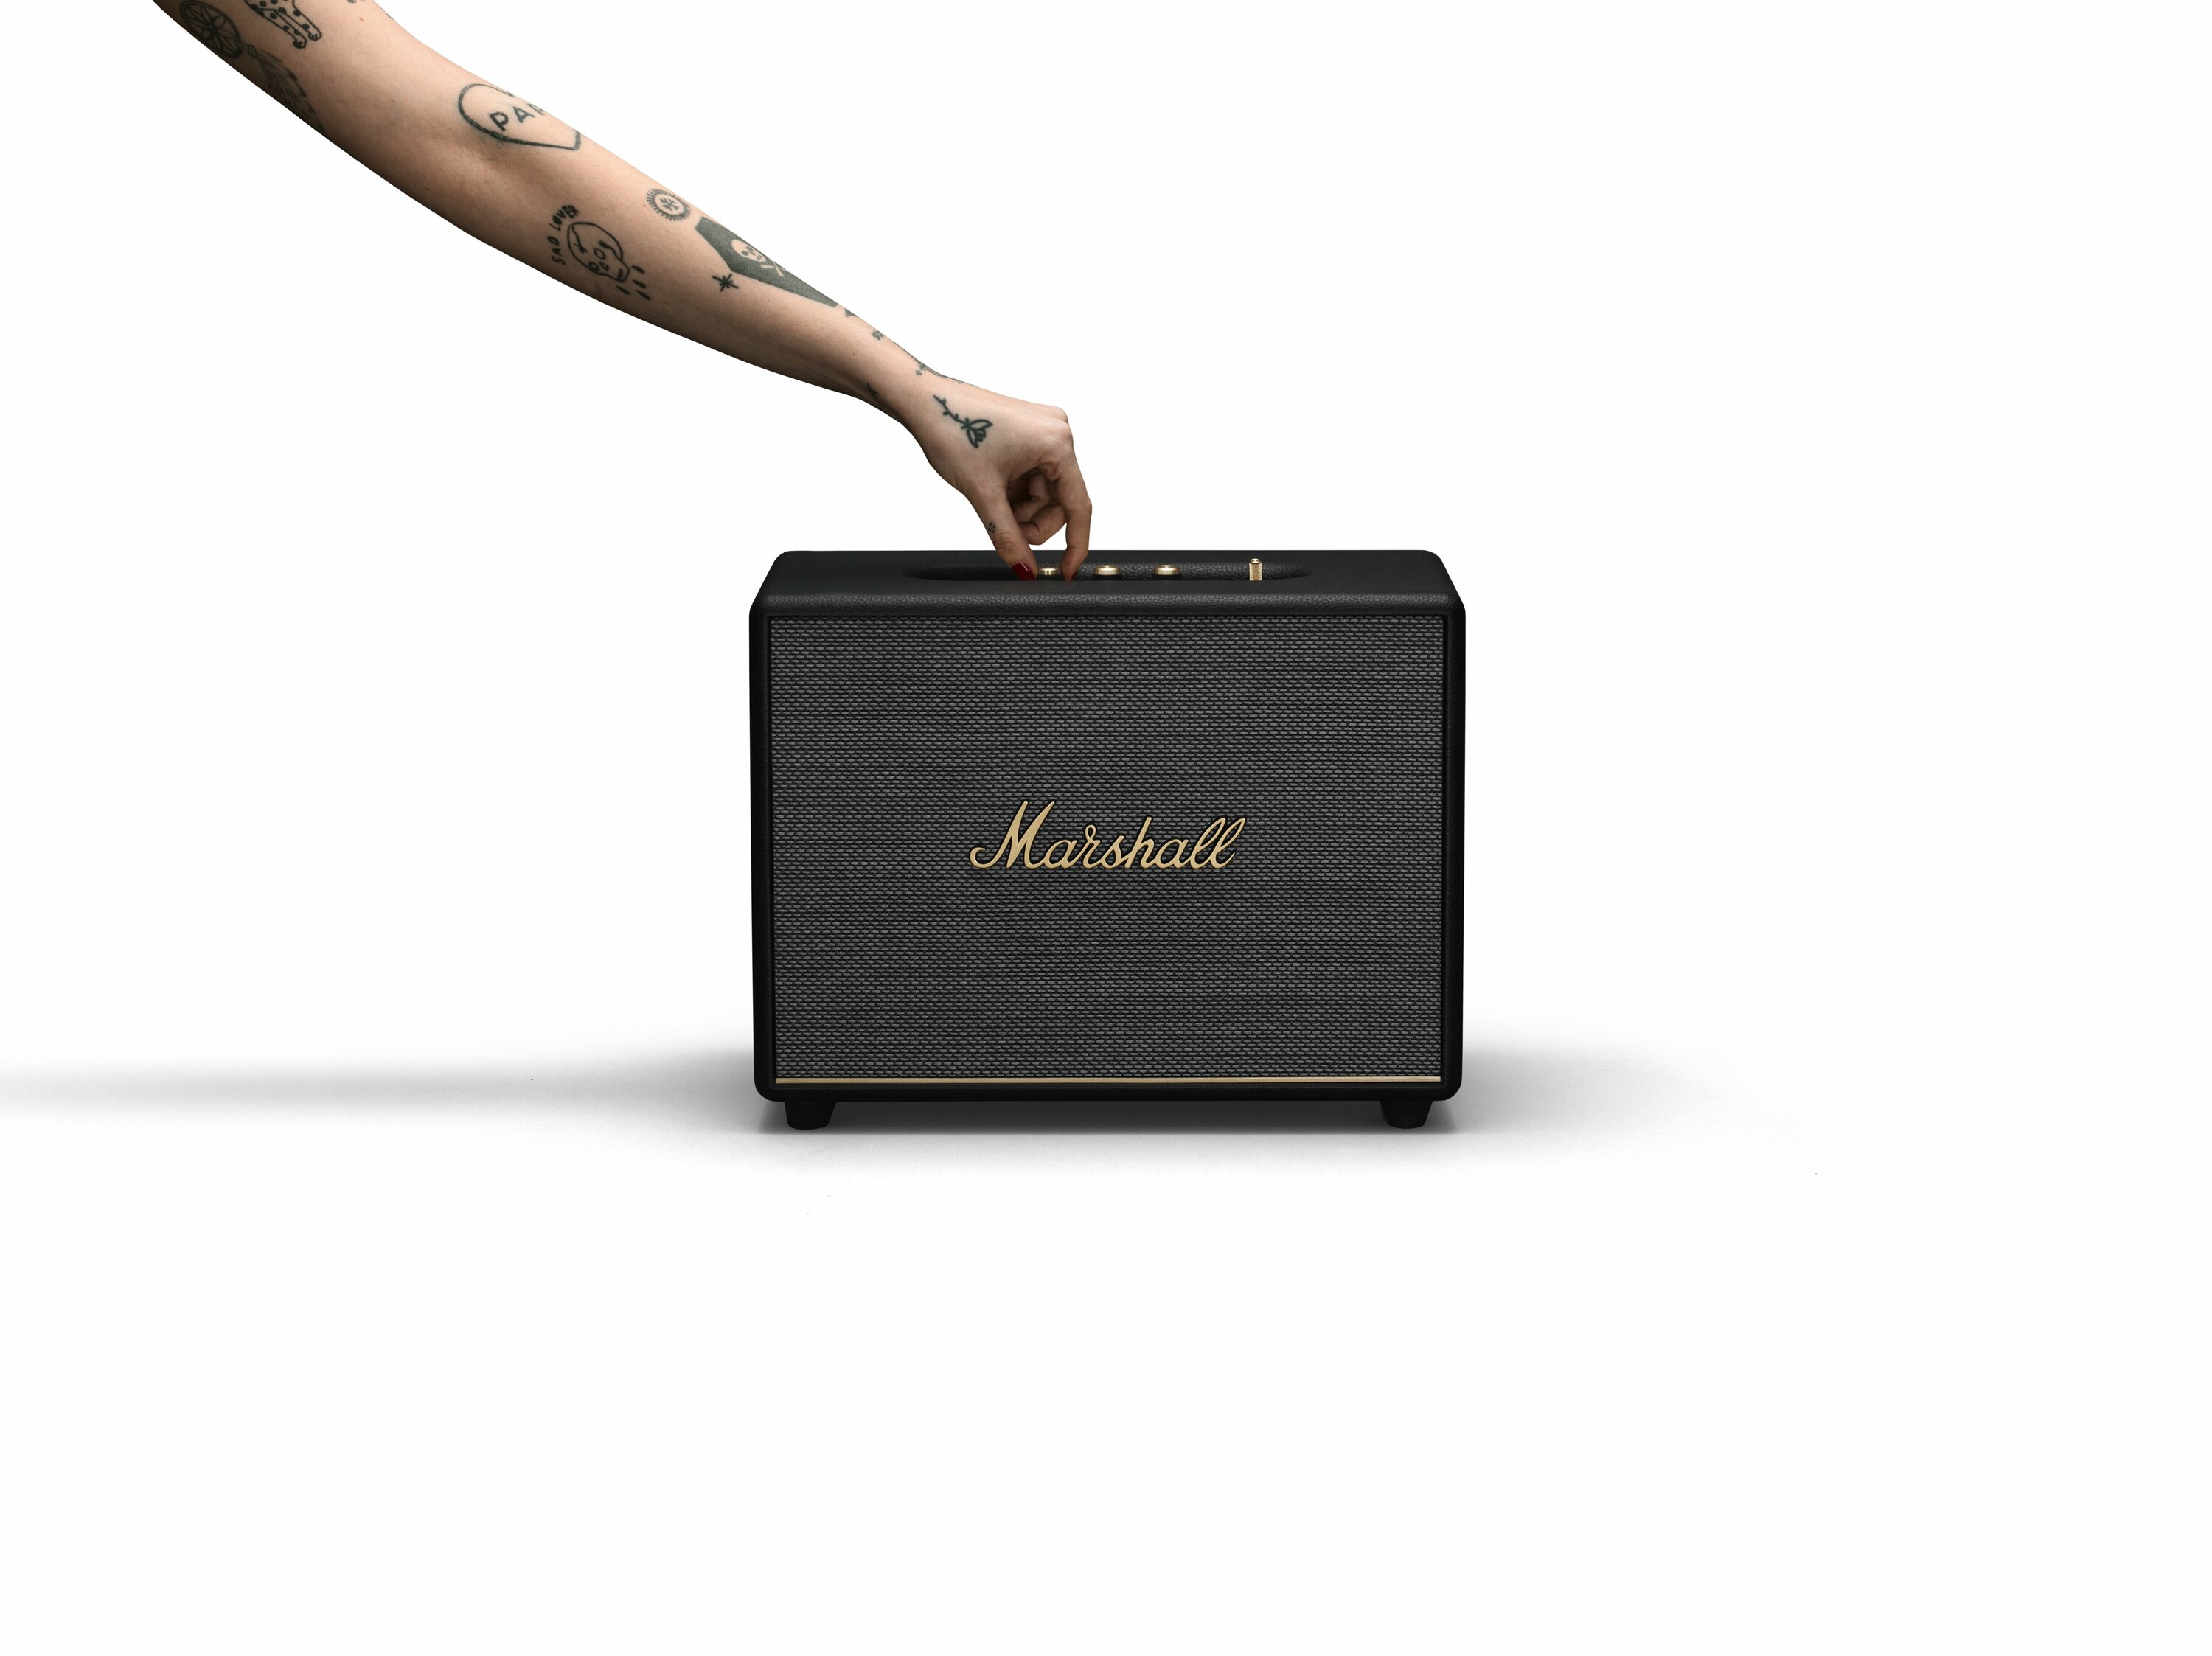 Marshall Woburn III Bluetooth speaker